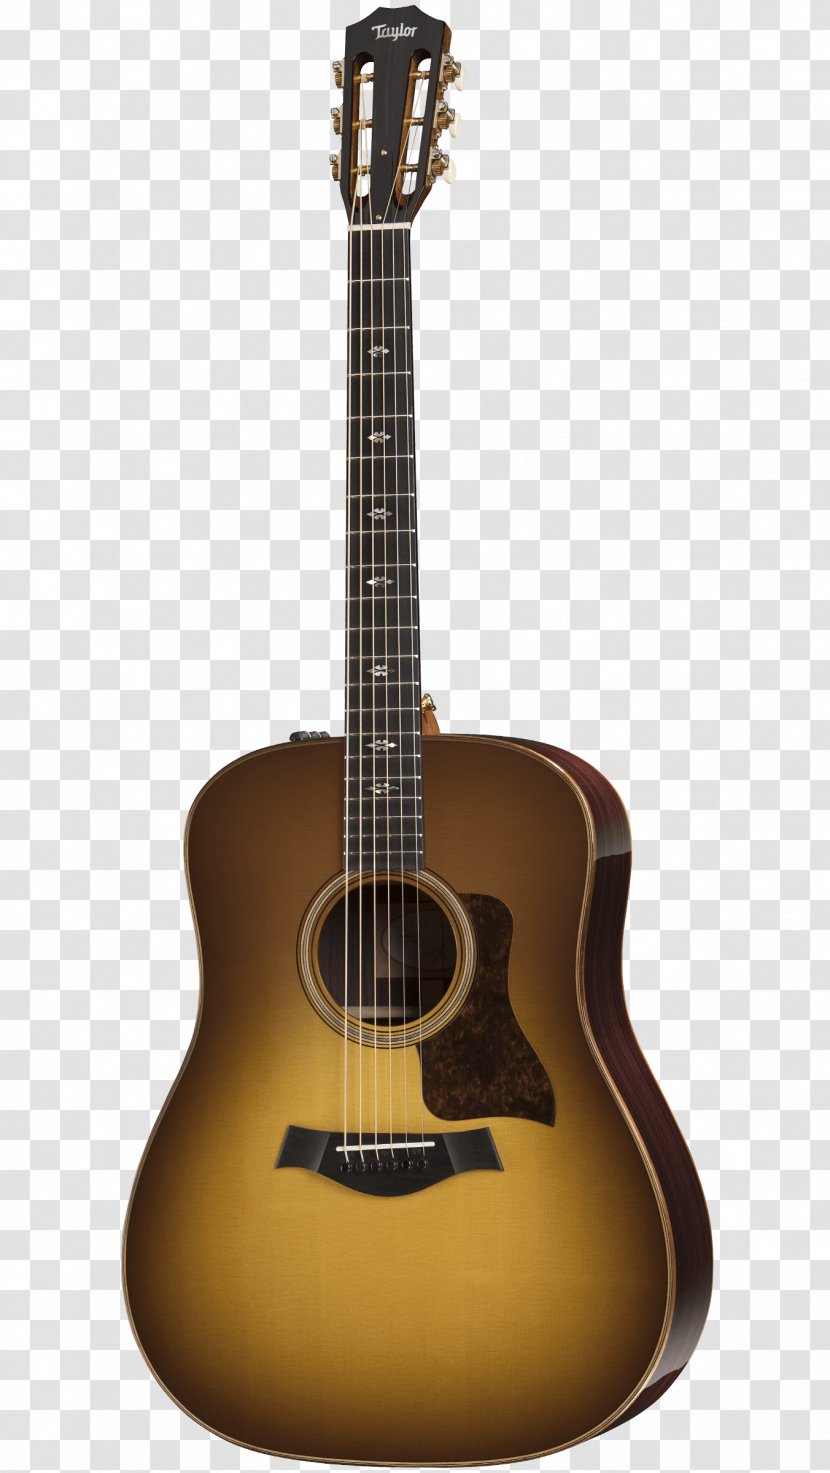 Taylor Guitars Twelve-string Guitar Fret Steel-string Acoustic - Musical Instrument - Sunburst Transparent PNG